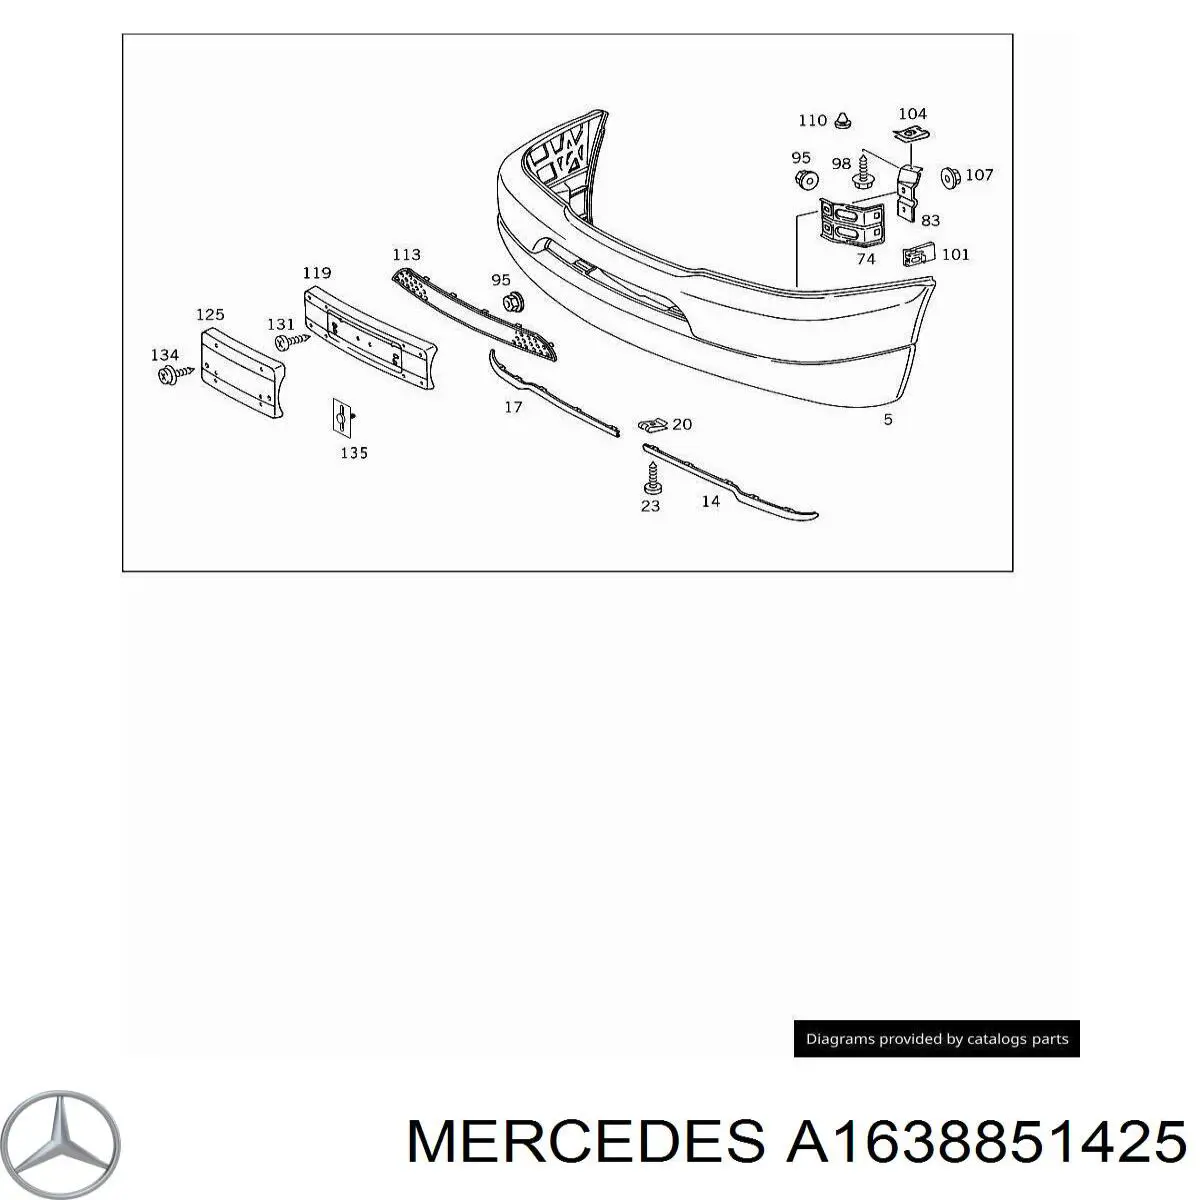 A1638851425 Mercedes alerón parachoques delantero derecho